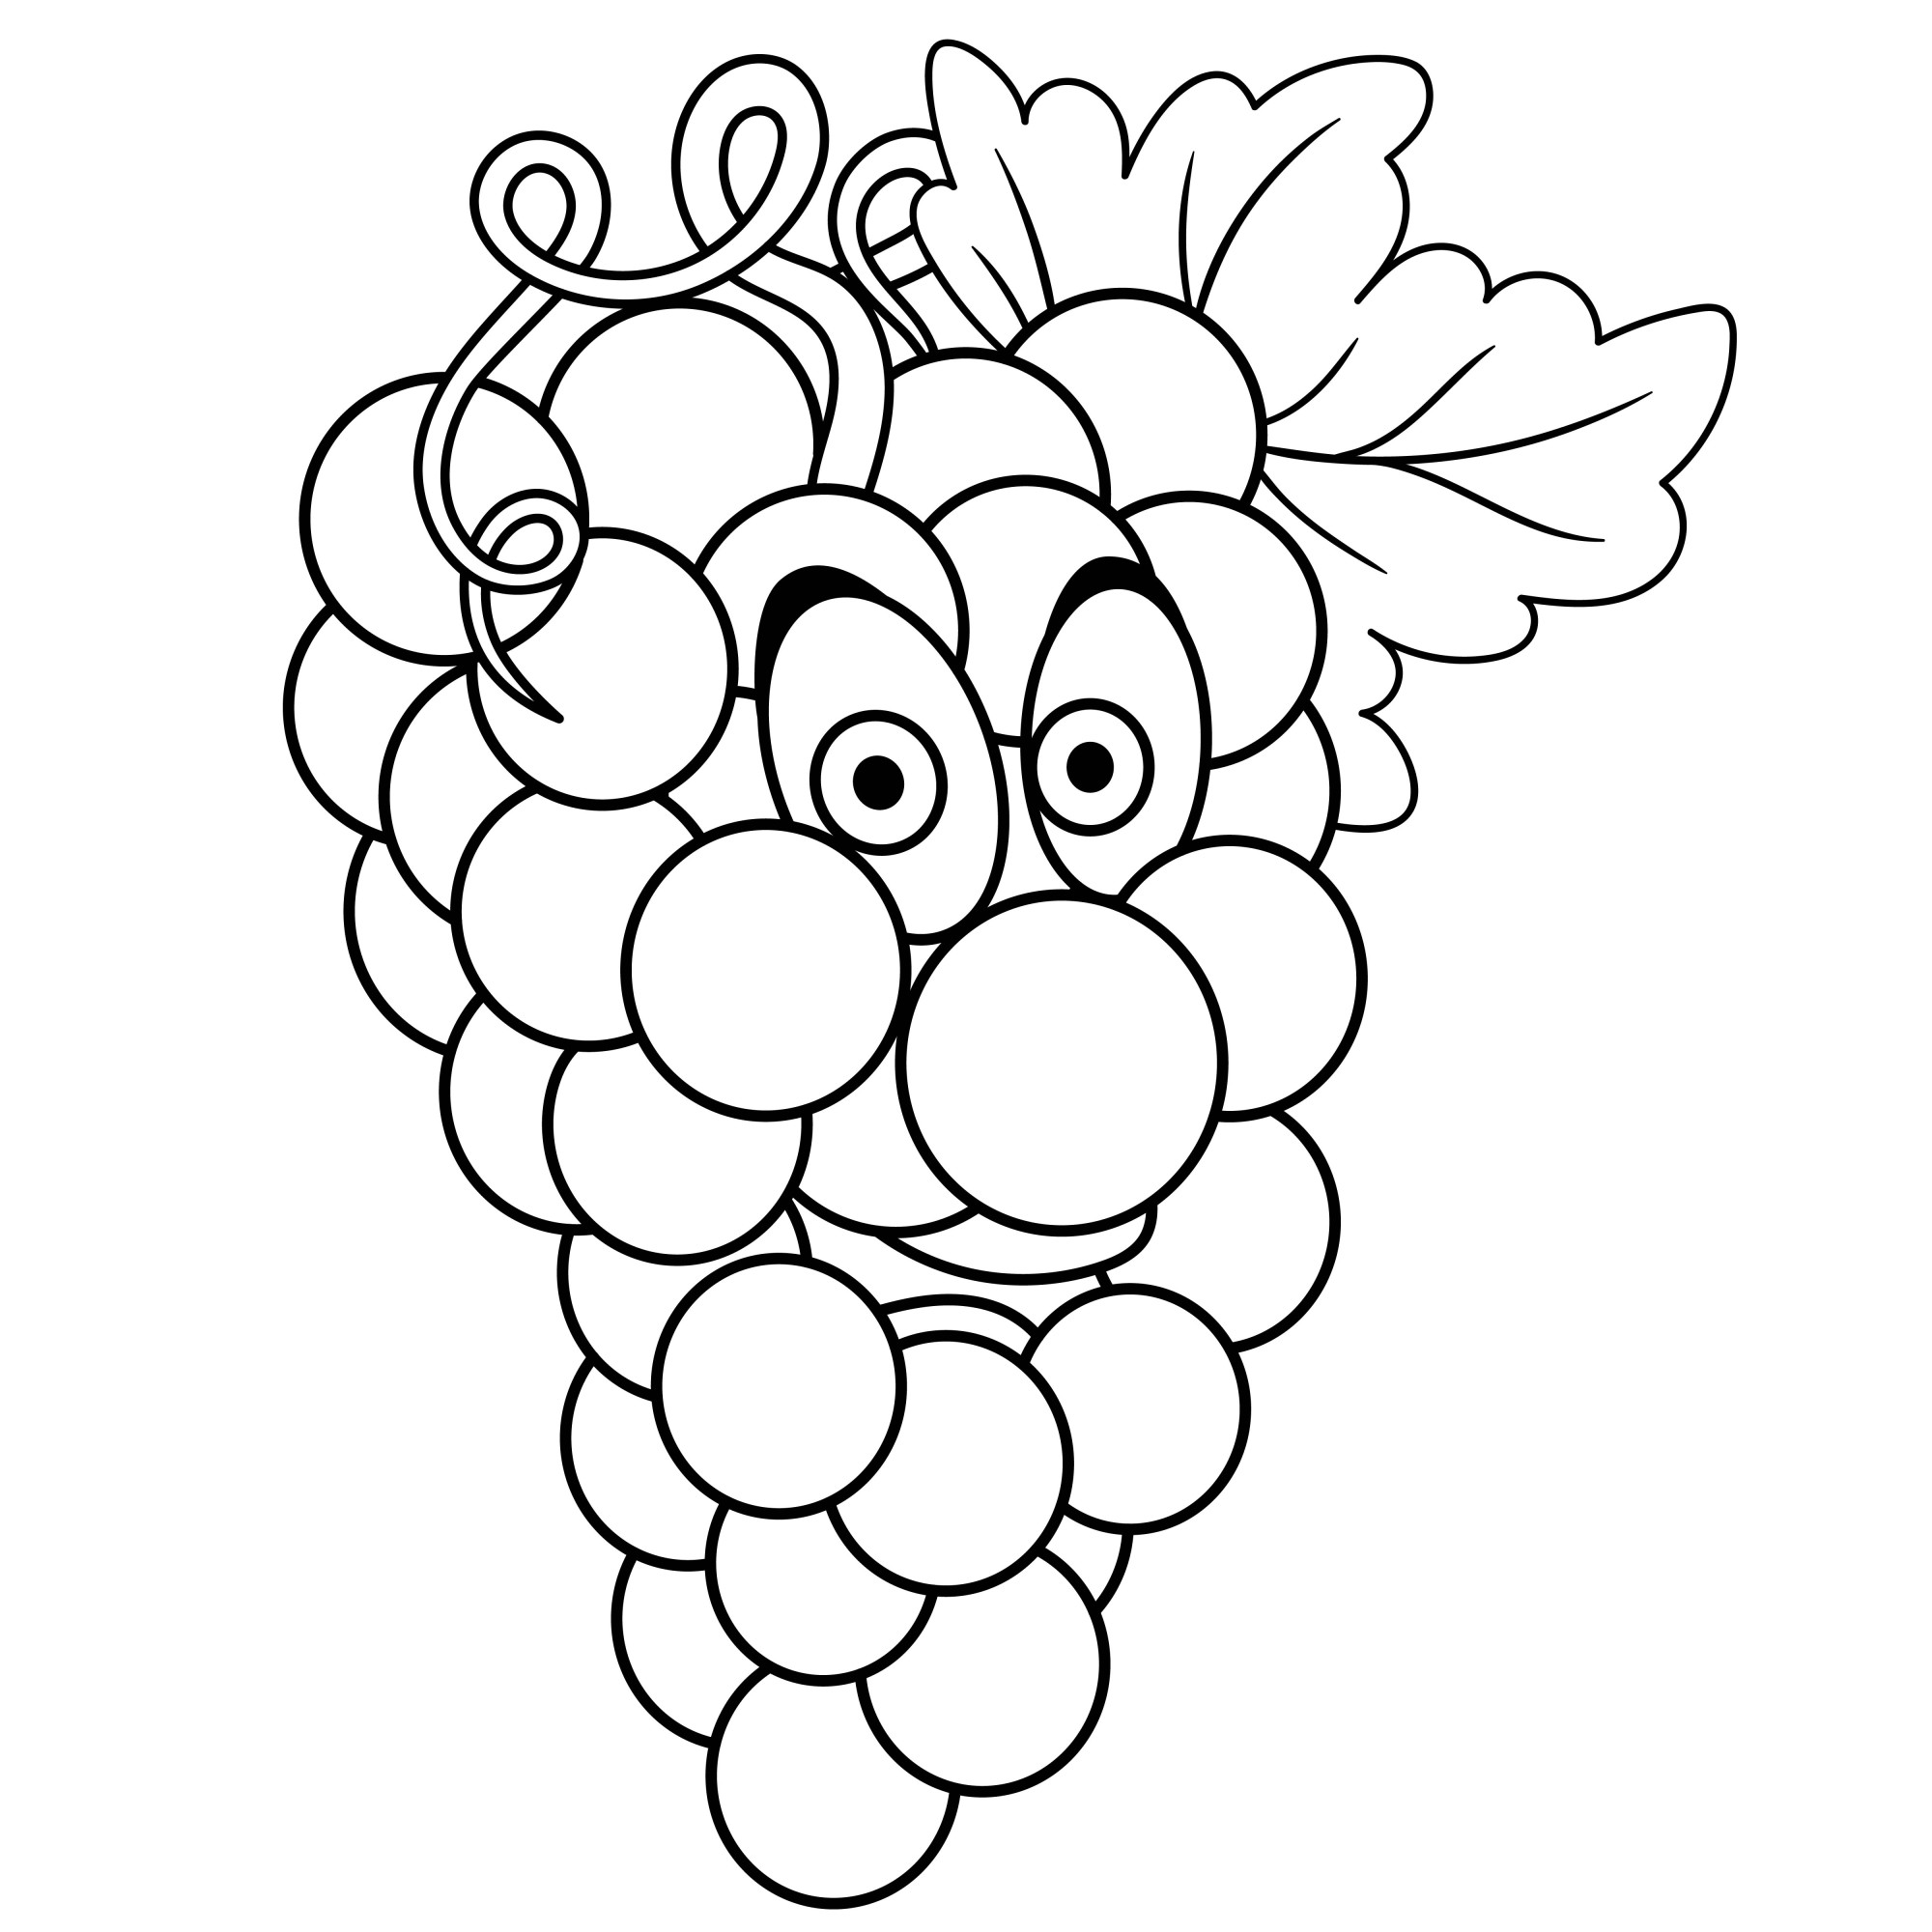 Раскраска для детей: мультяшная гроздь винограда с большими глазами